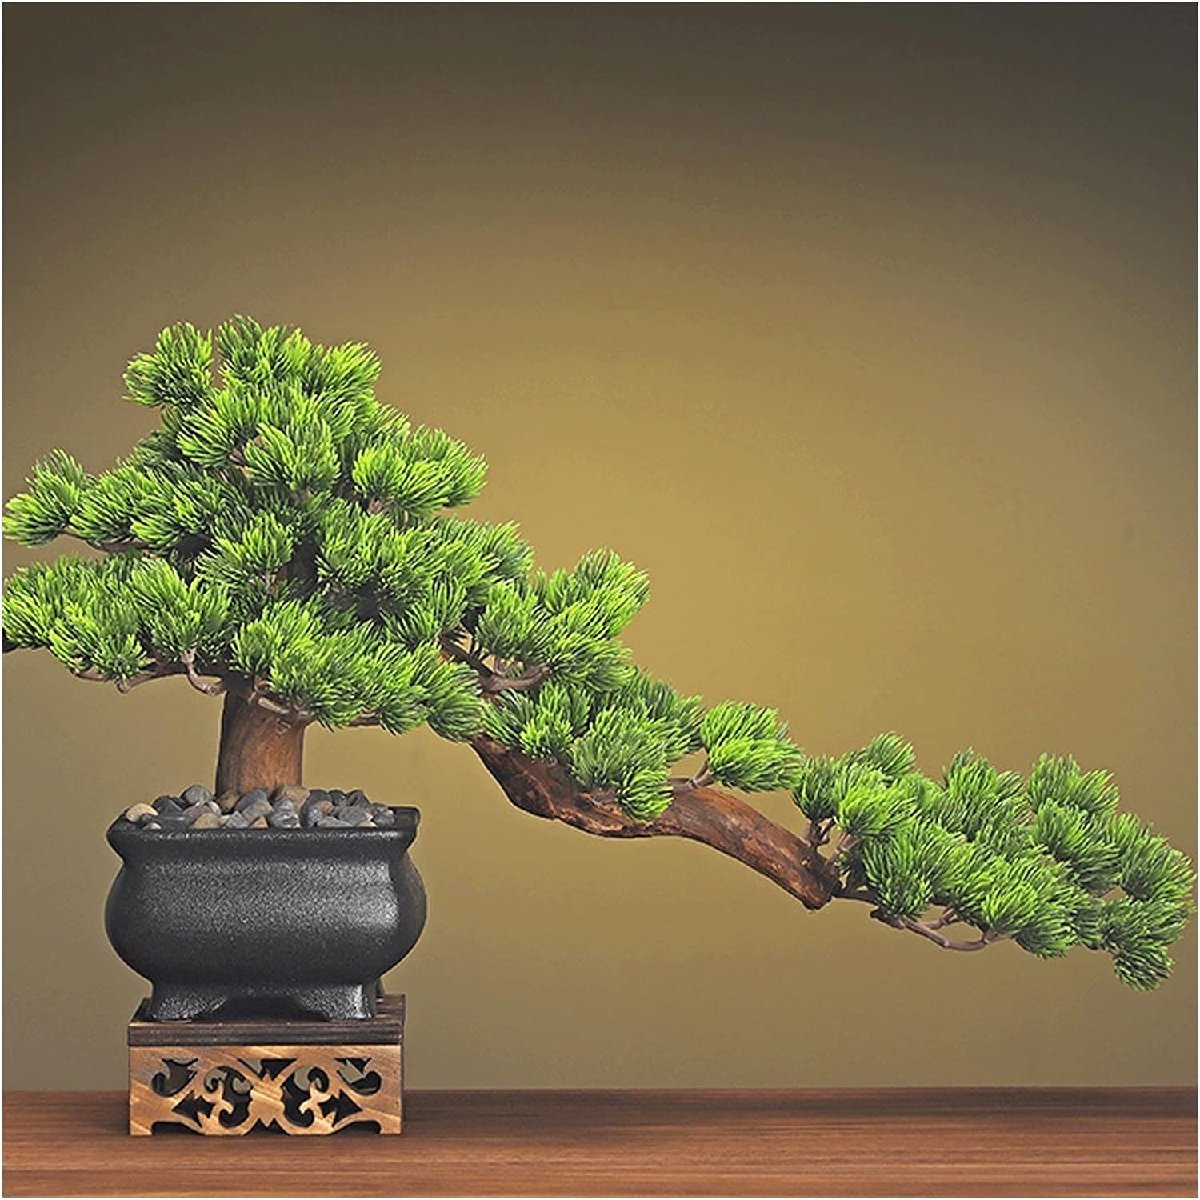 鉢植え造花12インチシミュレーション美しい松、石の装飾緑の植栽偽物の木、禅リビングルーム盆栽のポーチのための偽物の木